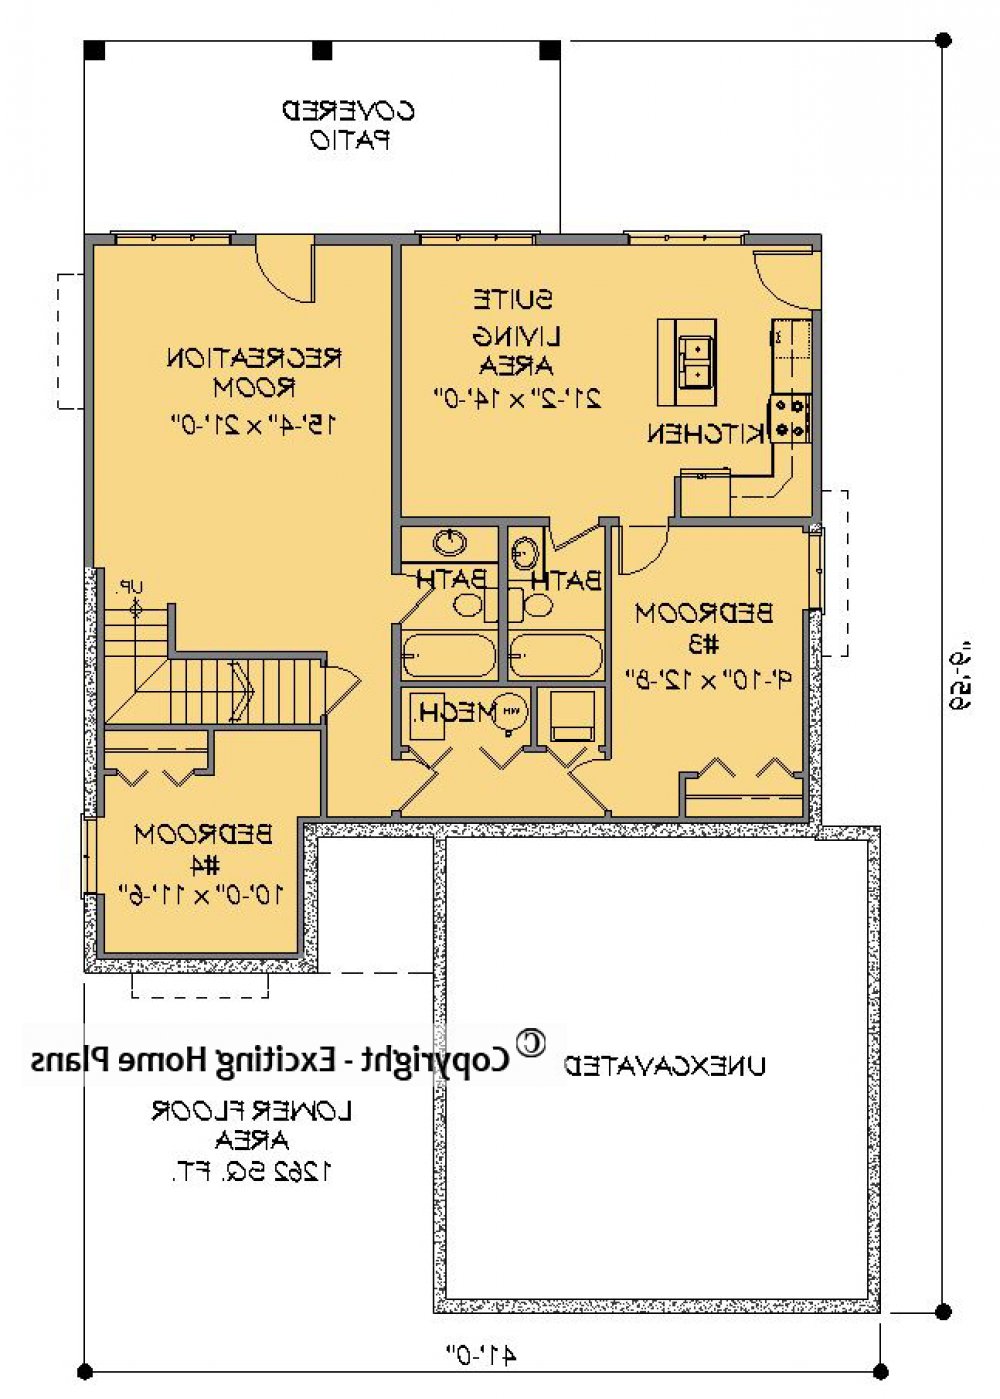 House Plan E1601-10 Lower Floor Plan REVERSE